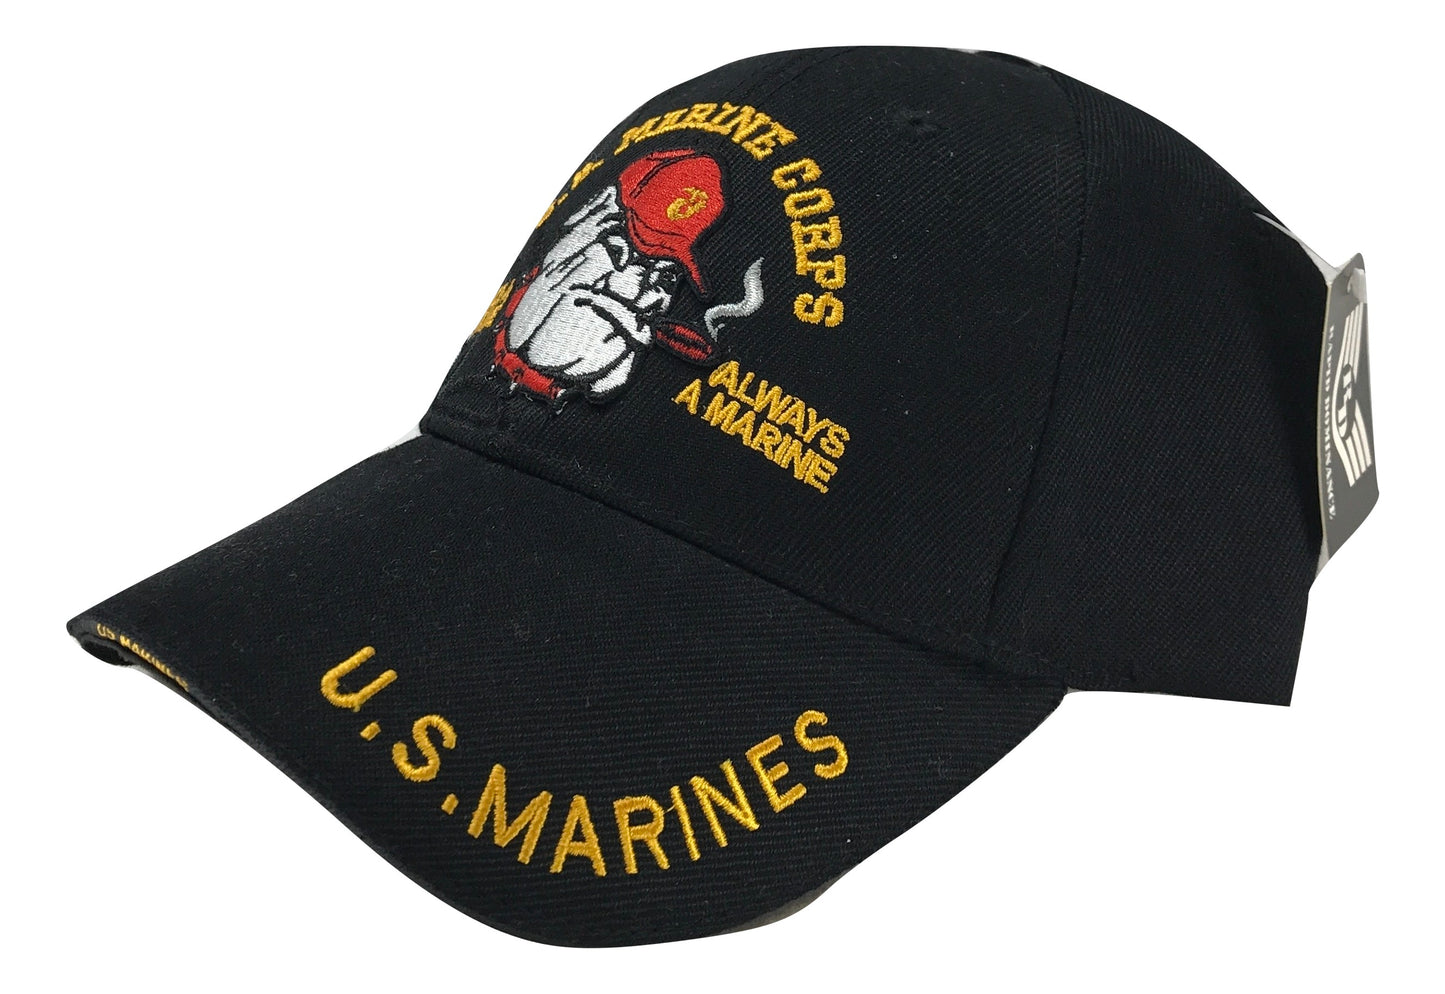 U.S Marine Corps